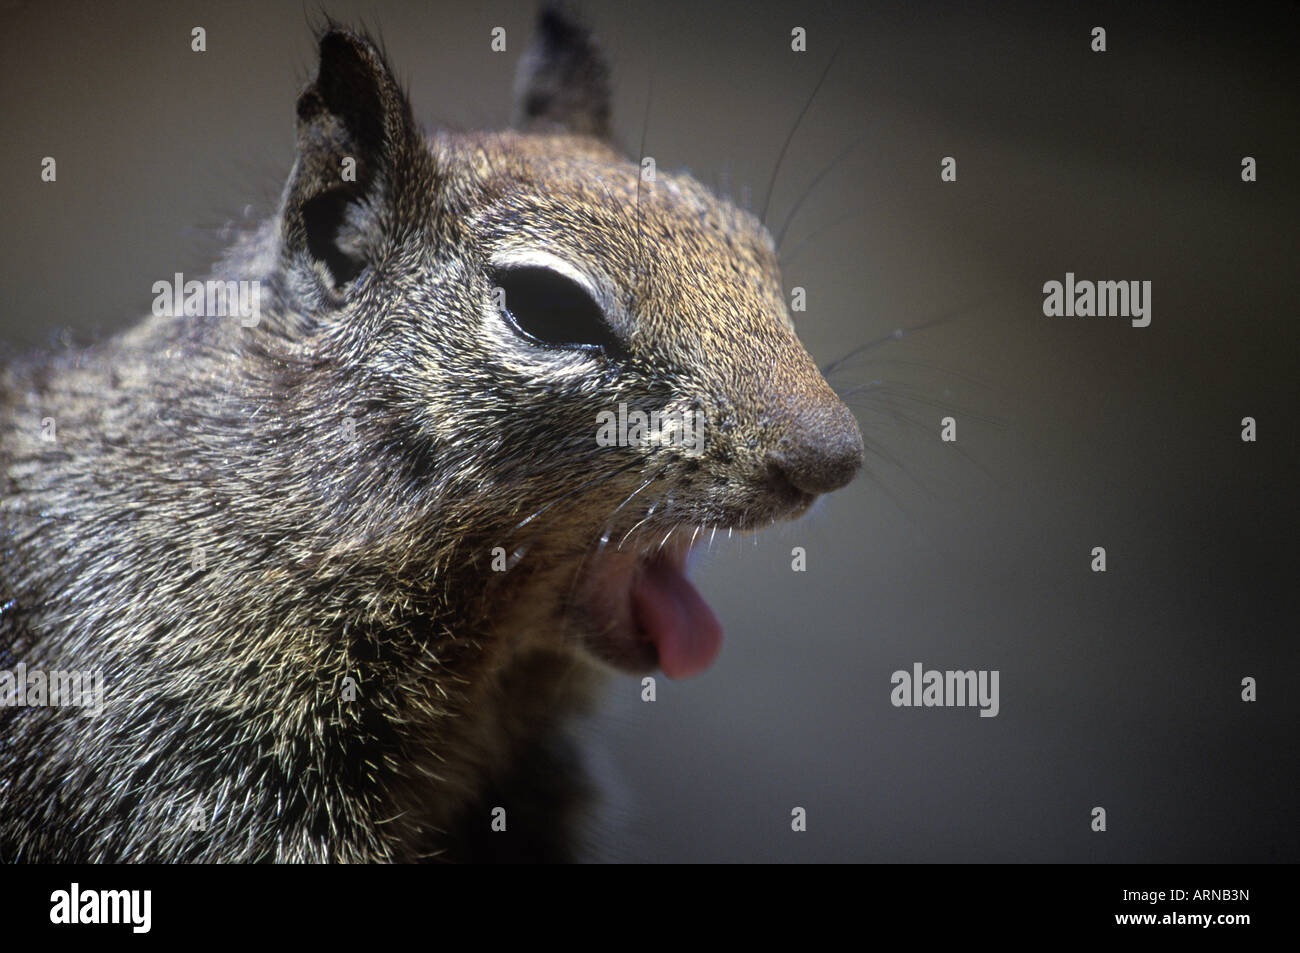 California Ground Squirrel (Spermophilus beecheyi) yawning, British Columbia, Canada. Stock Photo